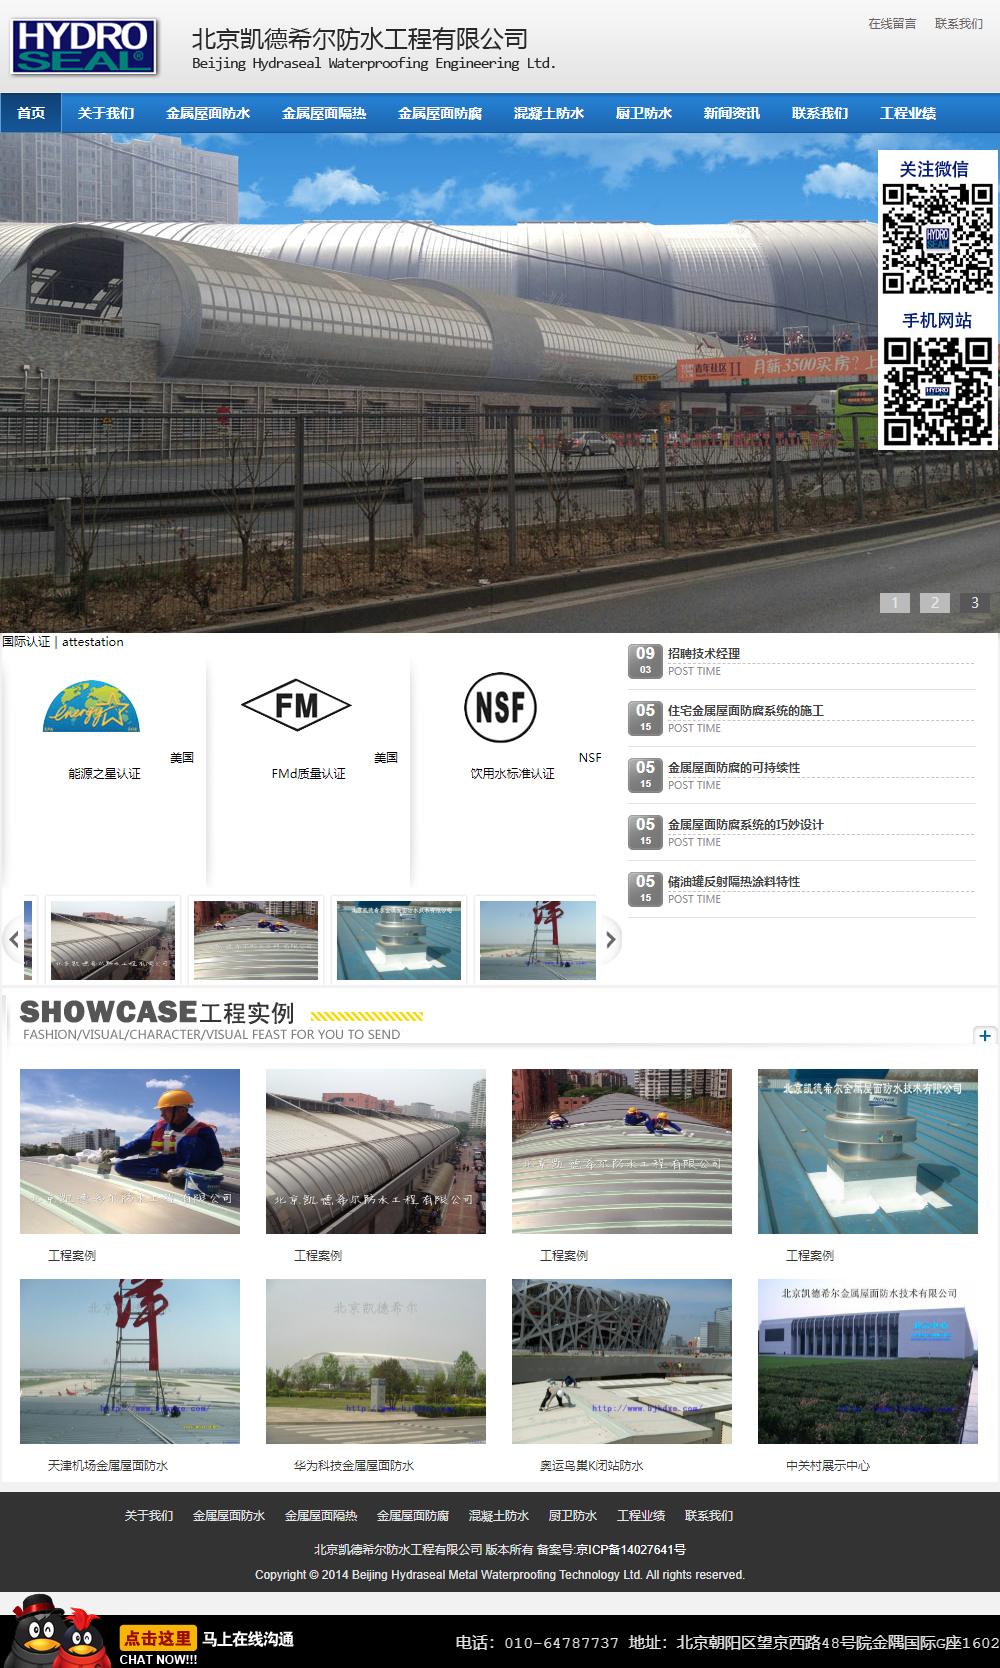 北京凯德希尔防水工程有限公司网站案例